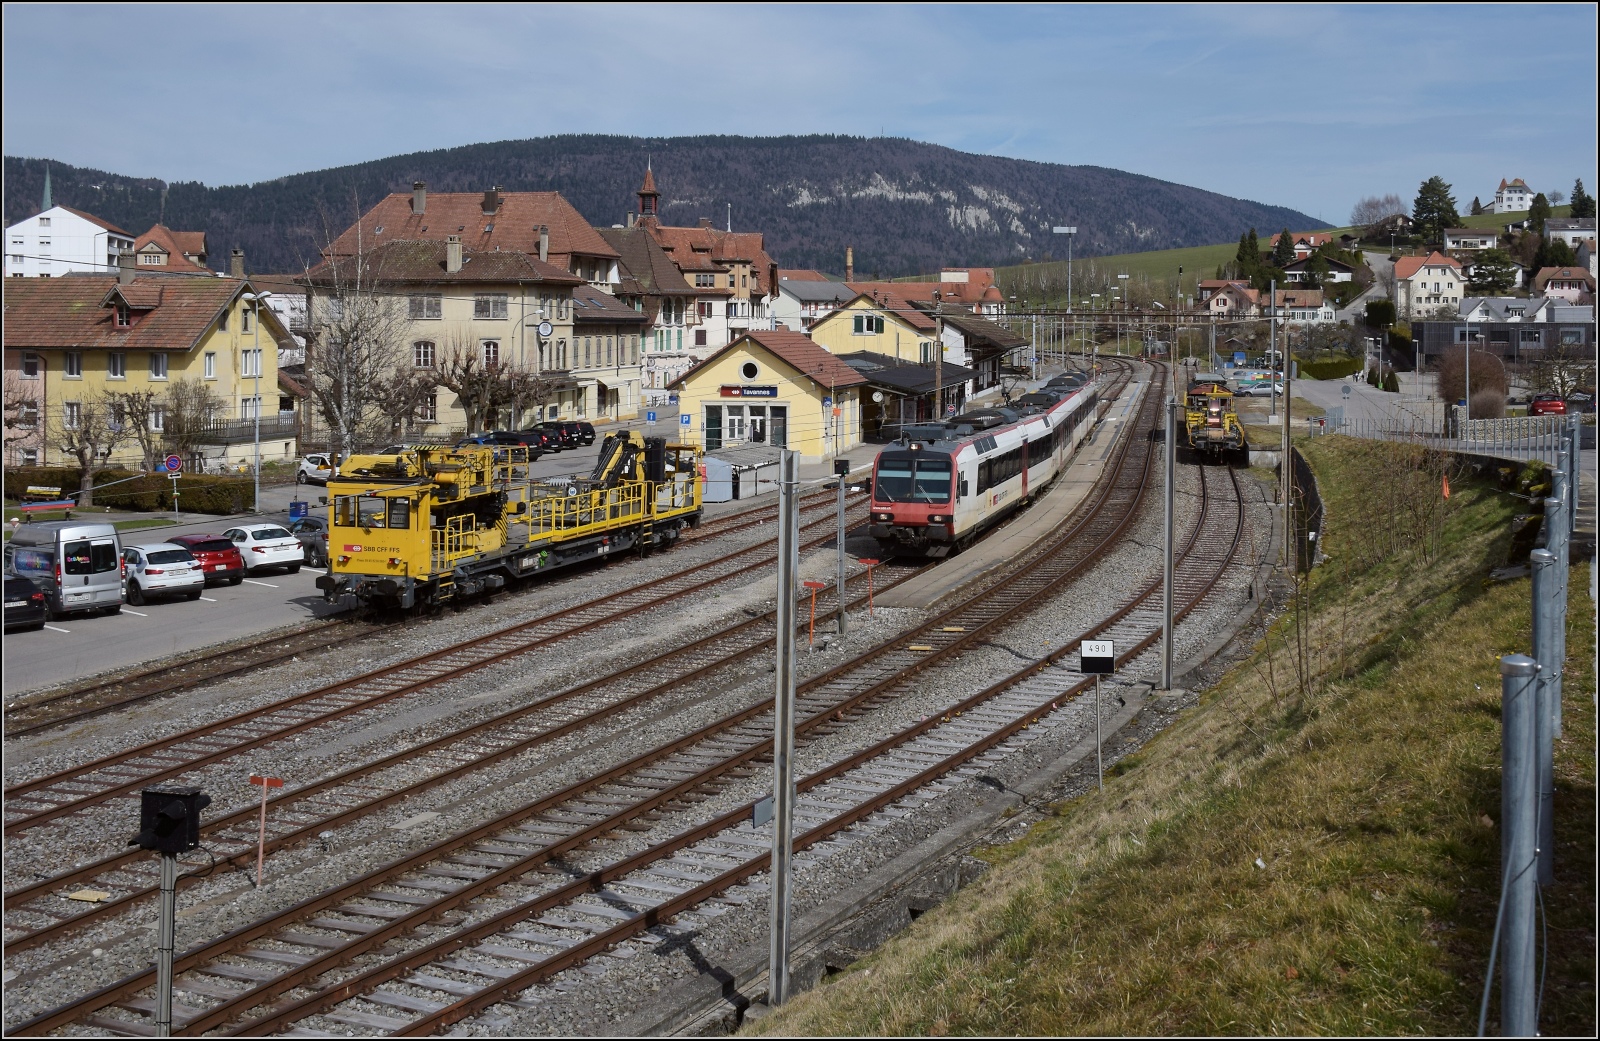 RBDe 560 233 darf im Bahnhof Tavannes bereits den neuen Fahrdraht nutzen. Ansonsten hat der Bahnhof noch einen äußerst traditionellen SBB-Gleiszuschnitt, wenn man von einigen Feinheiten im Gleisplan absieht. Im Hintergrund erhebt sich der Moron, Namensgeber für eine Schweizer Käserarität. März 2023.